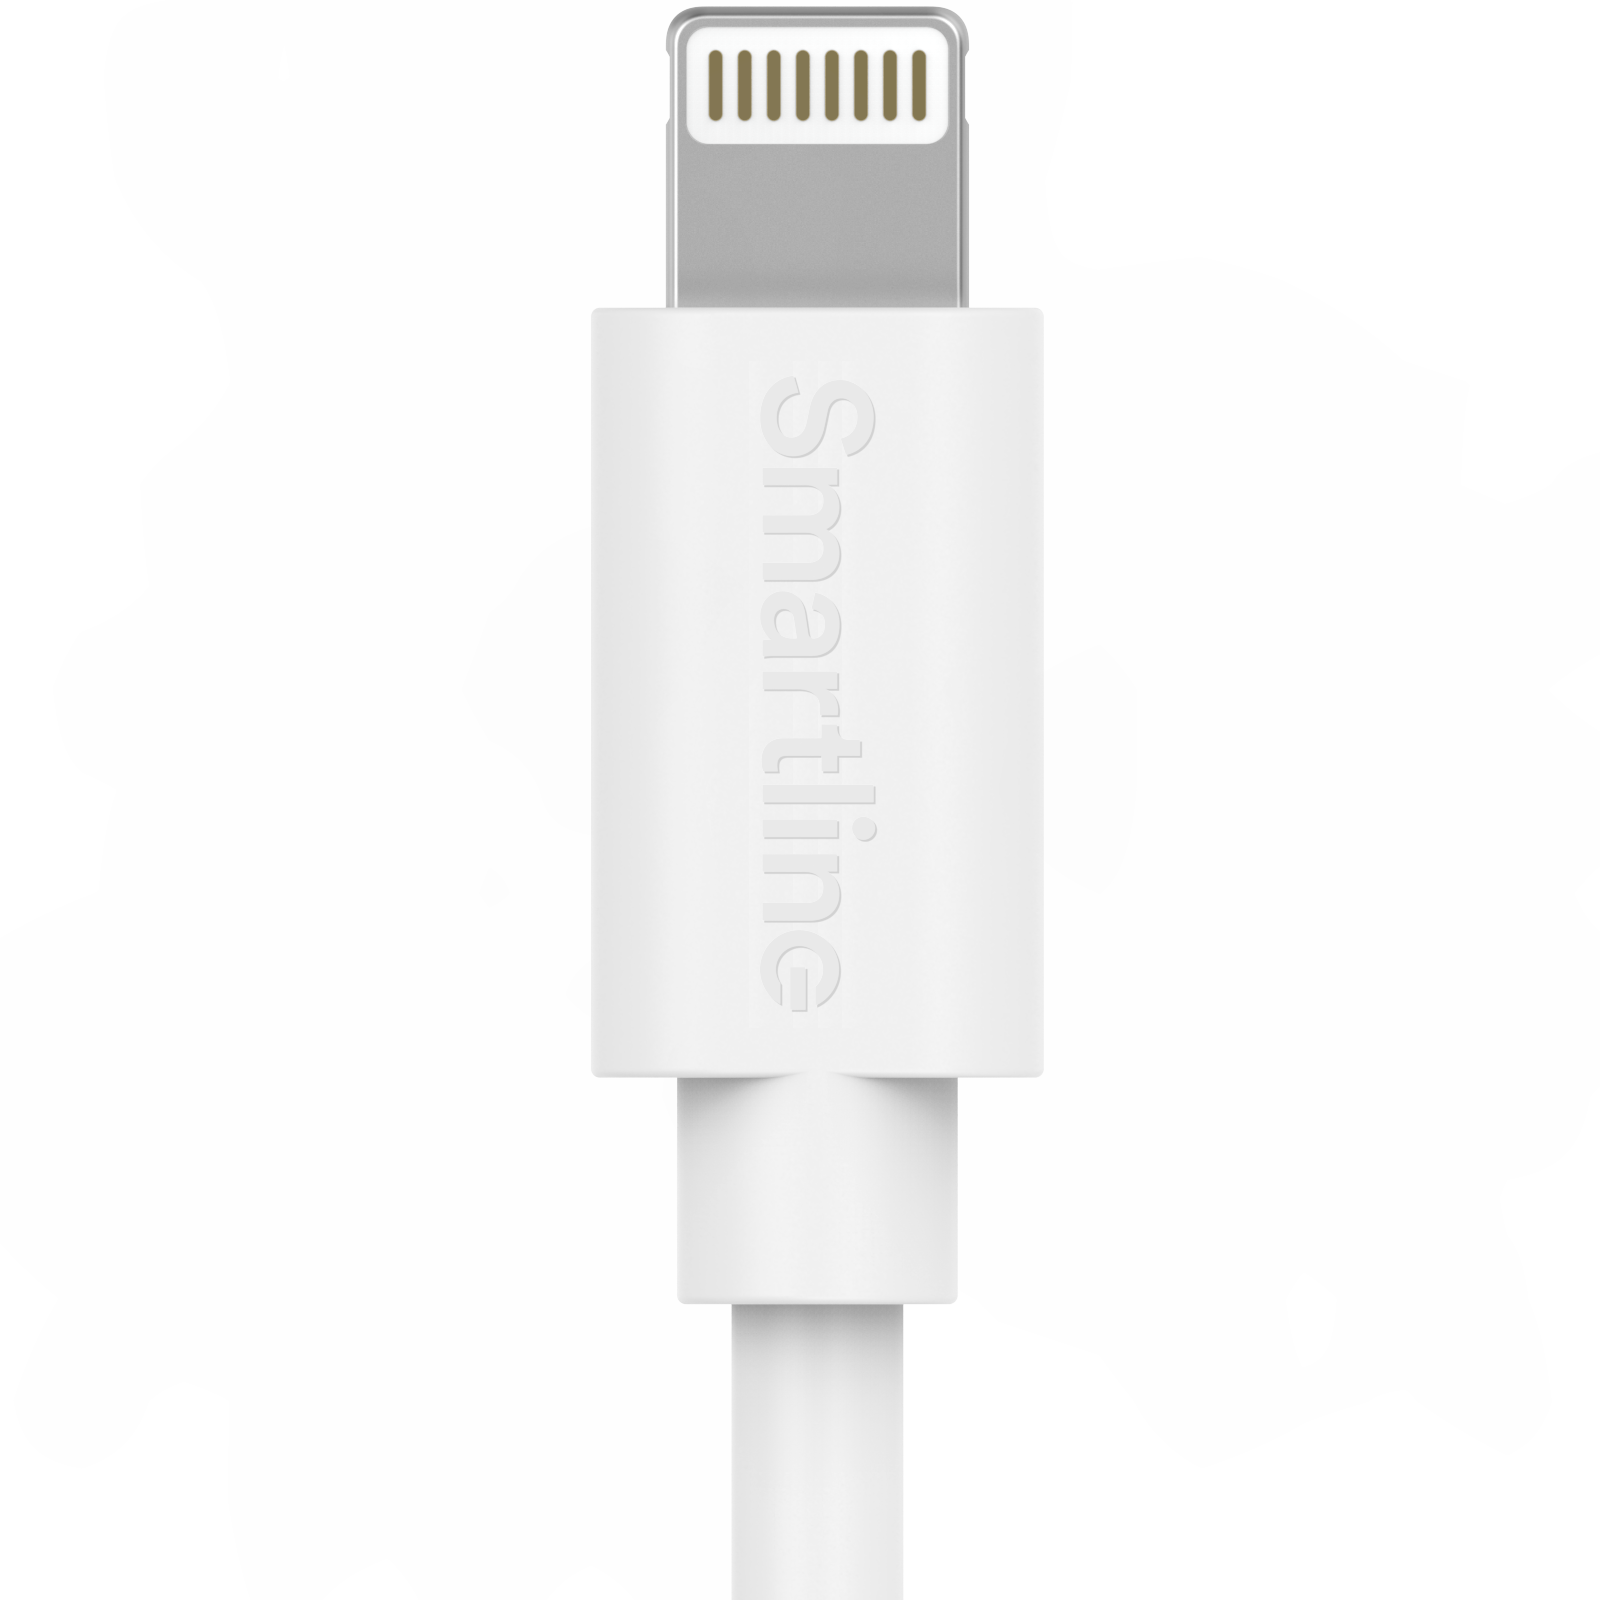 Cargador completo para iPhone - Cable de 2m y cargador de pared - Lightning - Smartline